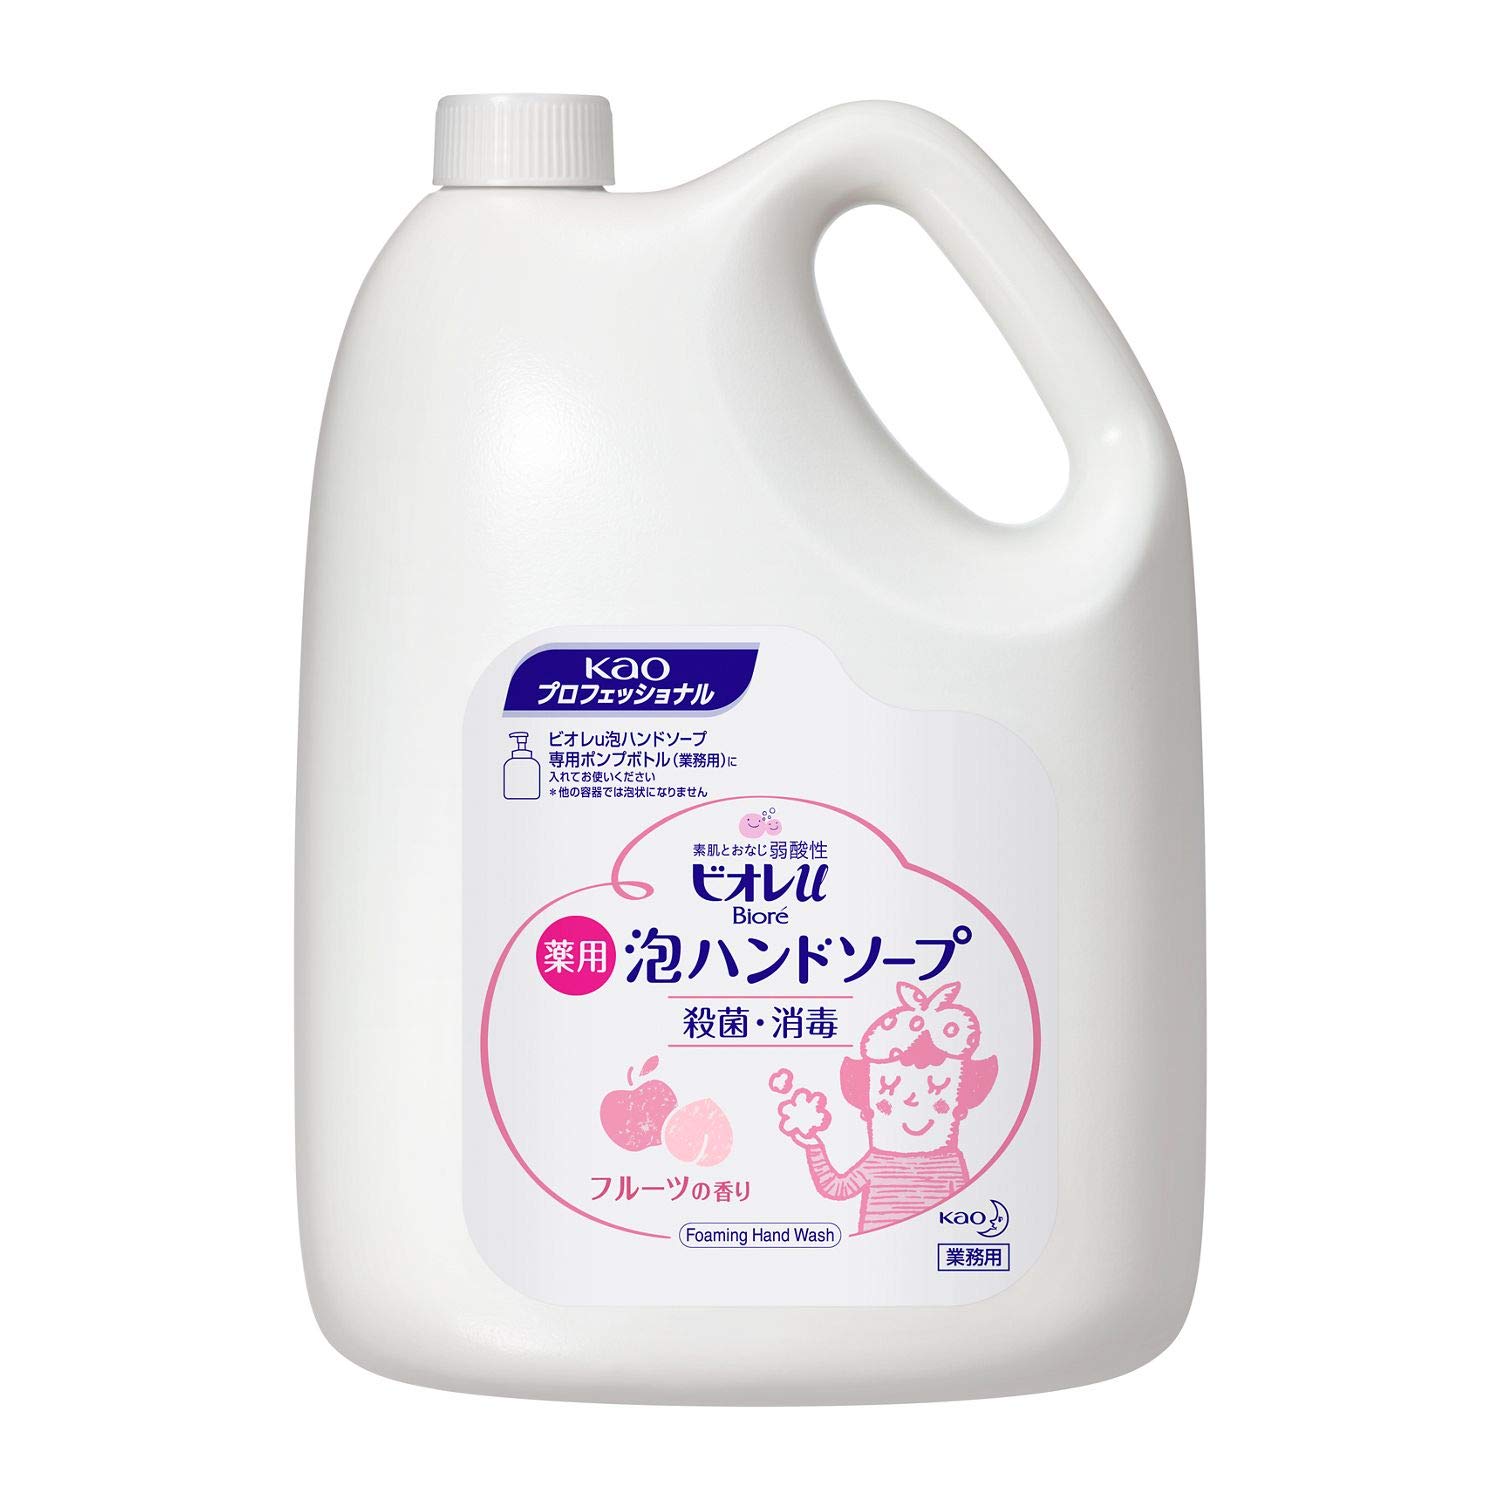 ビオレu 泡ハンドソープ フルーツの香り 業務用 4L (花王プロフェッショナルシリーズ)